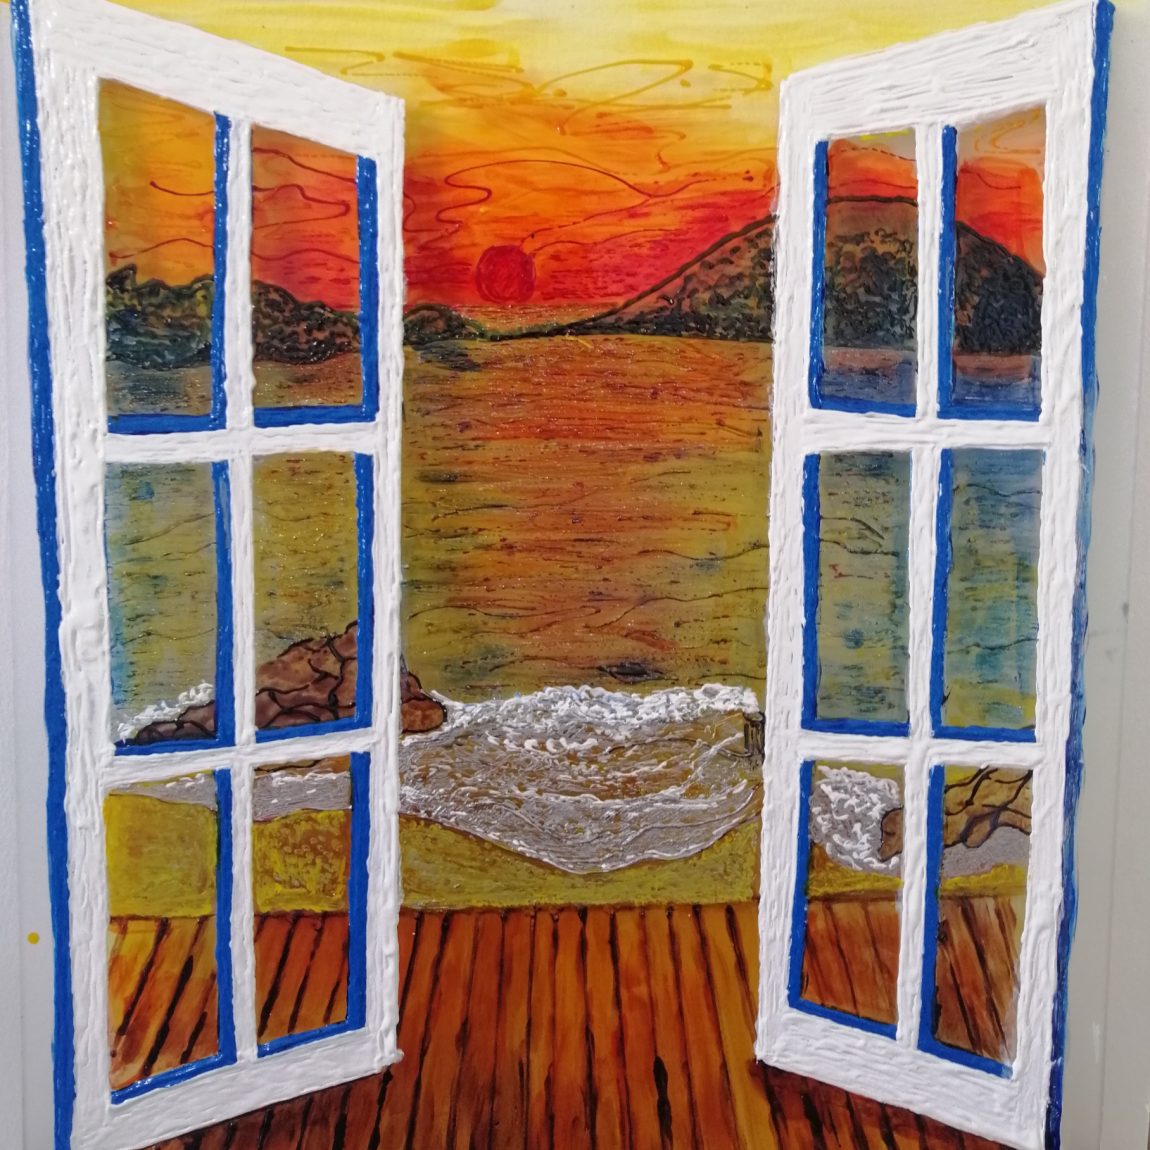 Penceremden Çatal Adası Teknik:Buzlu Cam Üzeri Cam Boyama
Ölçü:42 x 52 cm